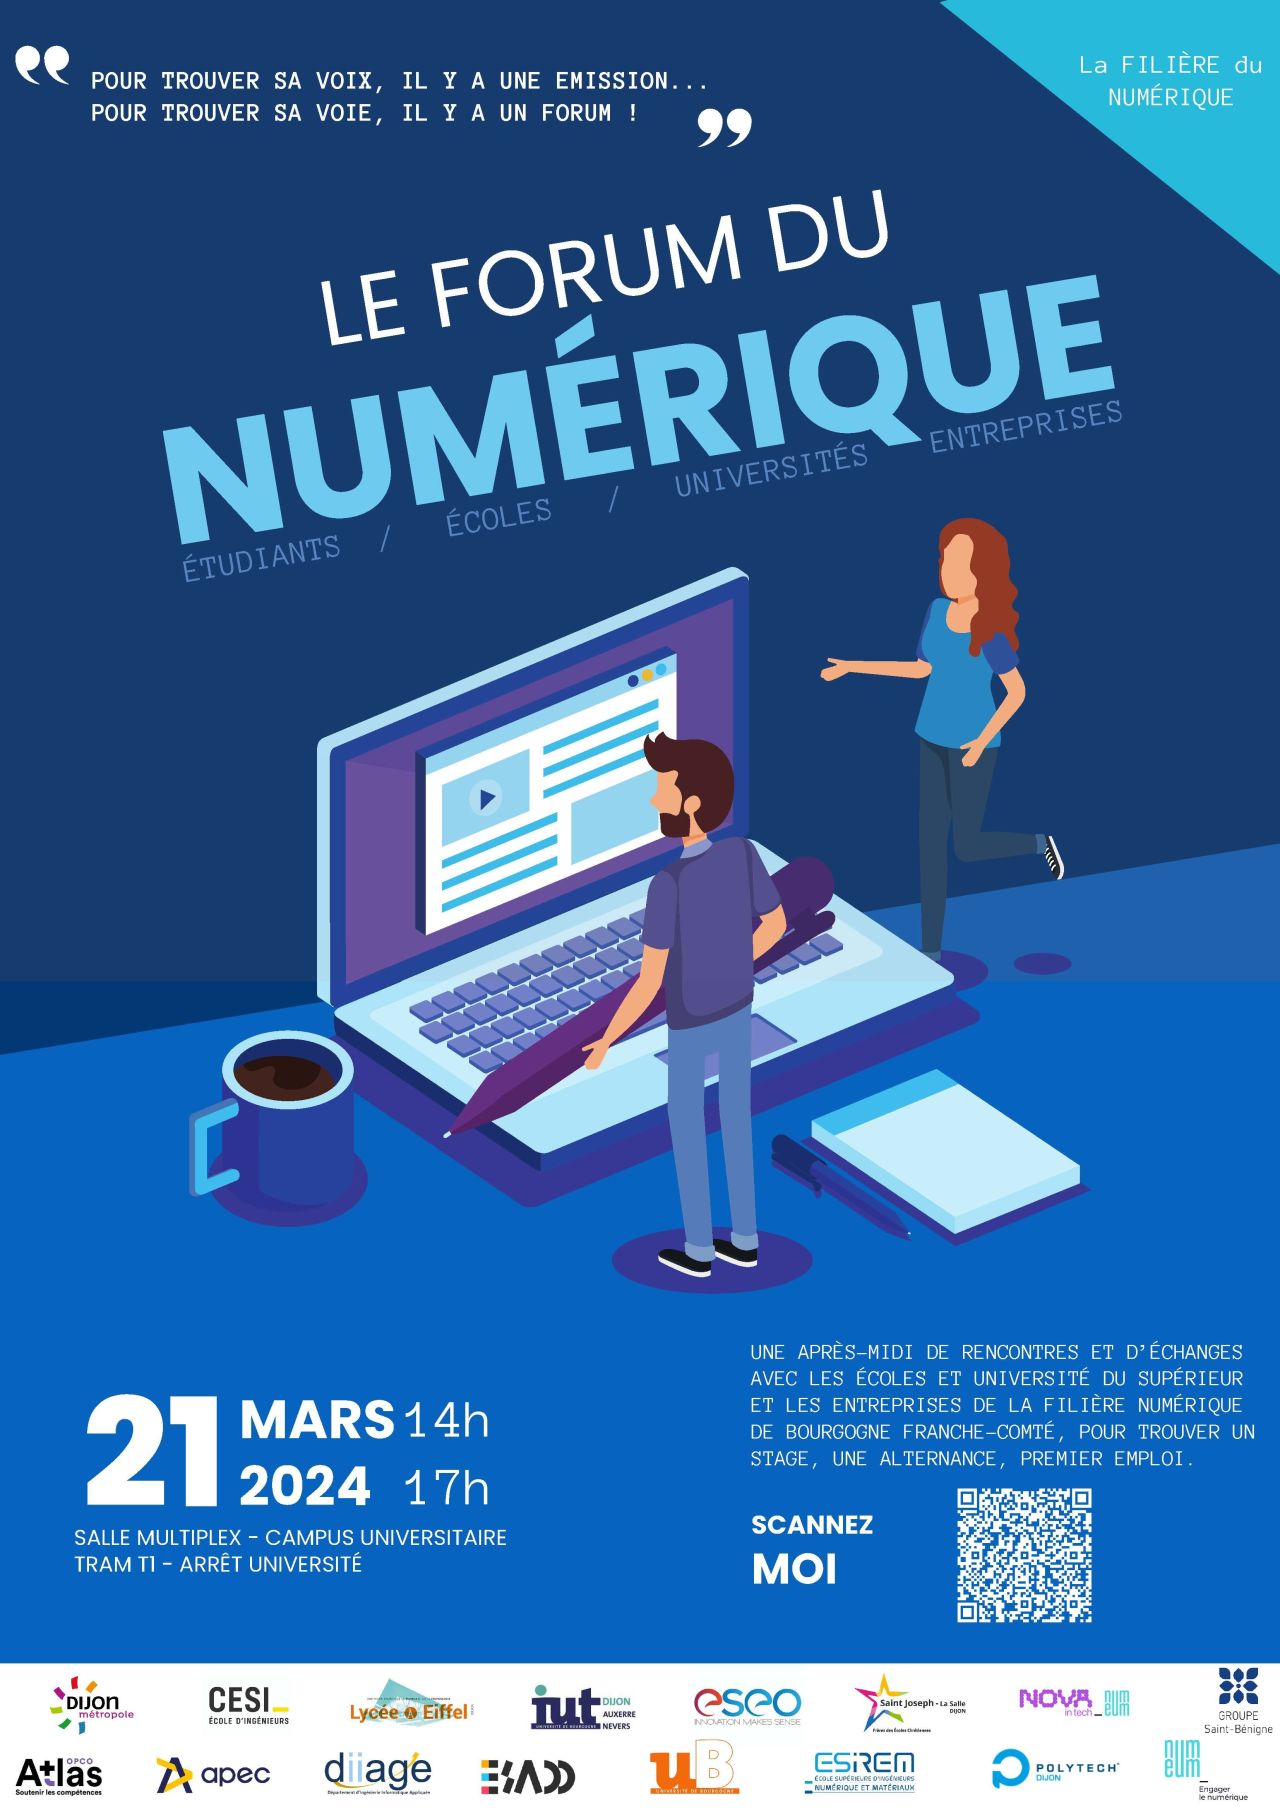 Affiche de promotion du forum numérique